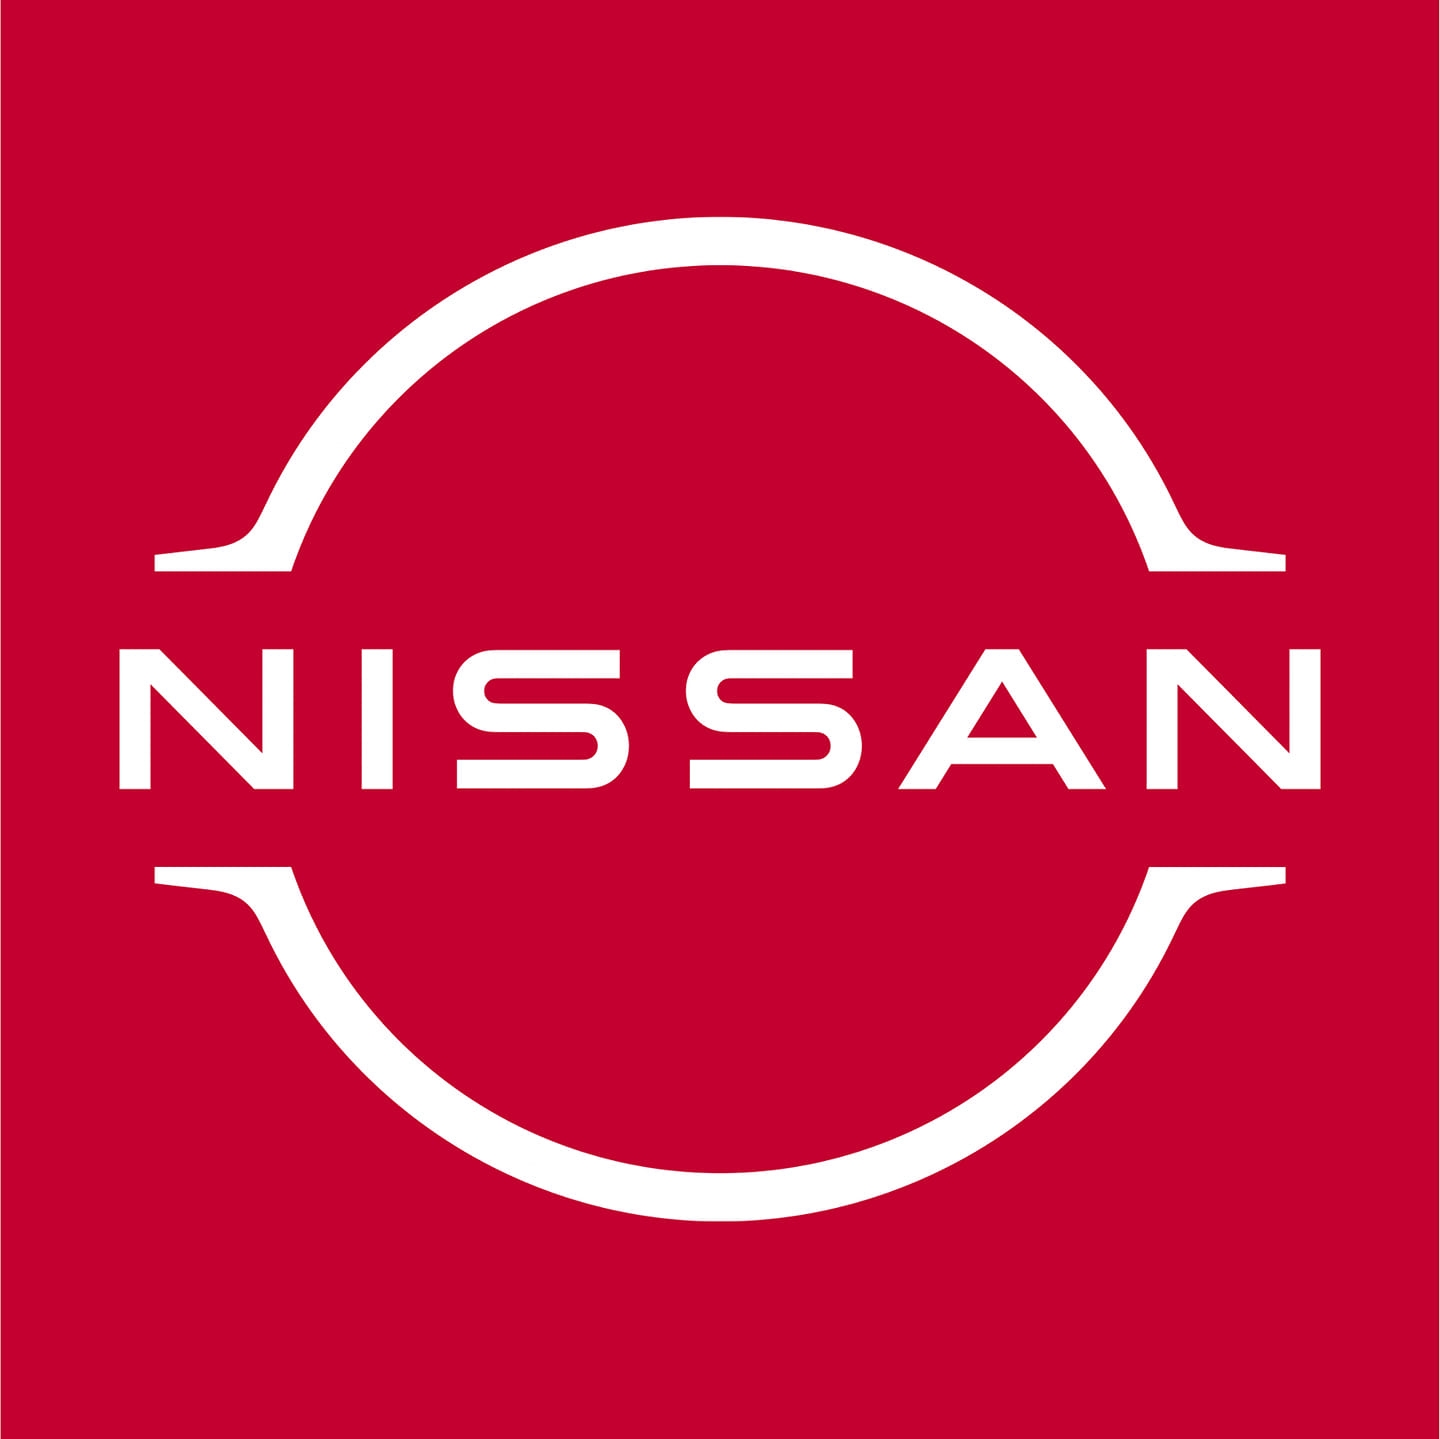 JUBILANT NISSAN VELLORE - Logo